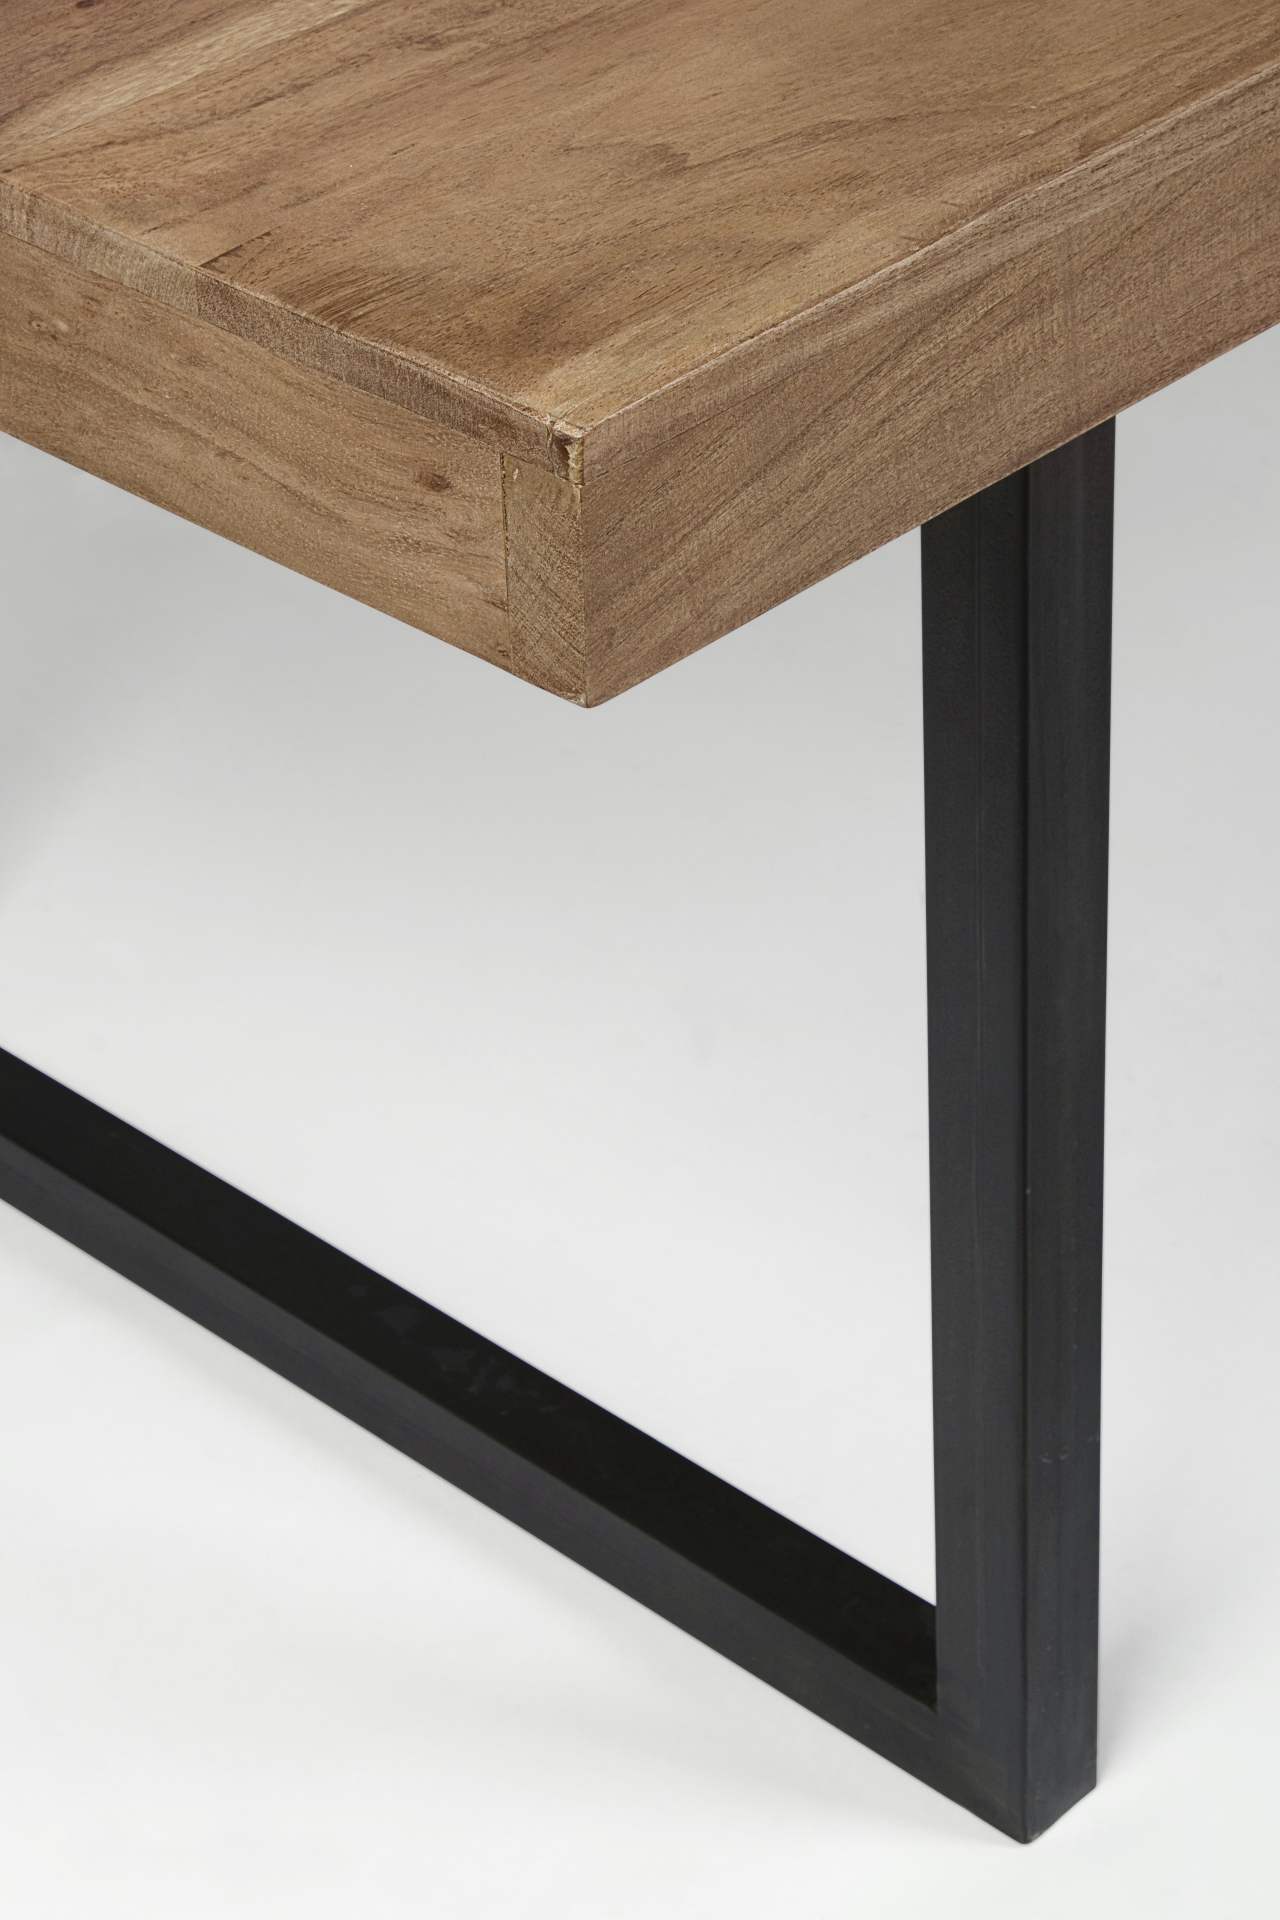 Der Esstisch Egon überzeugt mit seinem moderndem Design. Gefertigt wurde er aus Akazienholz, welches einen natürlichen Farbton besitzt. Das Gestell des Tisches ist aus Metall und ist in eine schwarze Farbe. Der Tisch besitzt eine Breite von 200 cm.